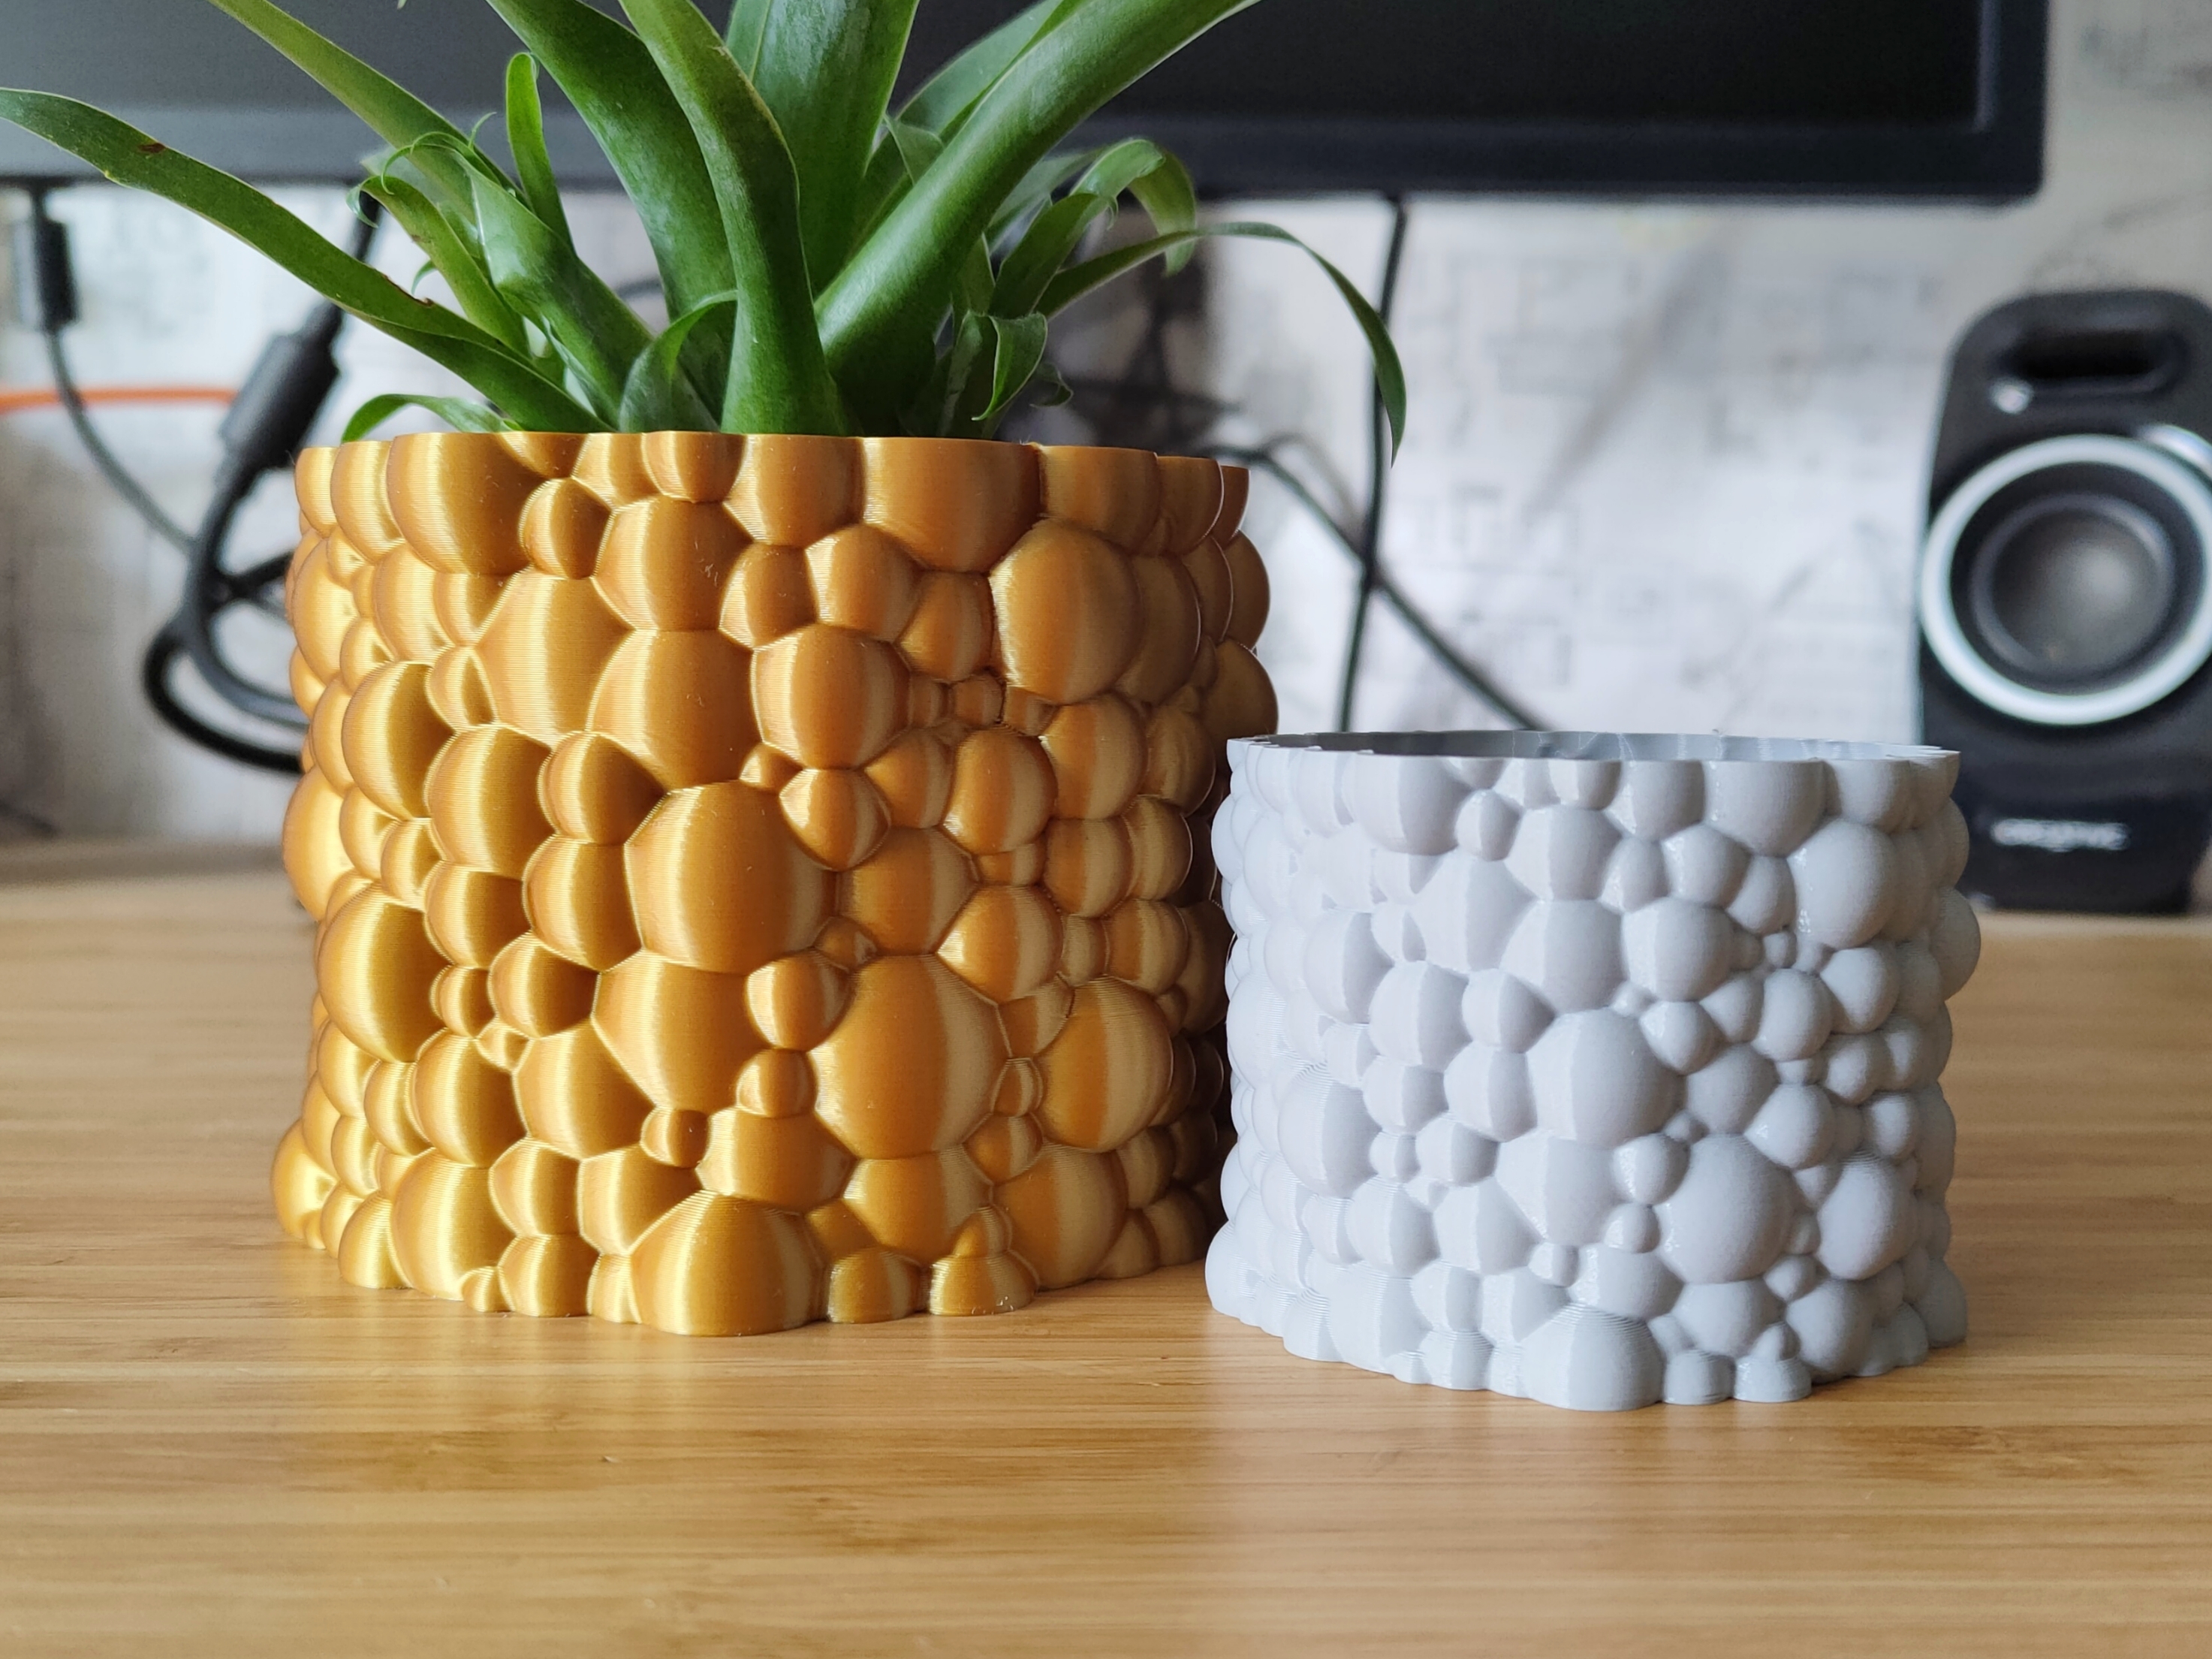 Bubble Gum pot and planter for plants - vase mode